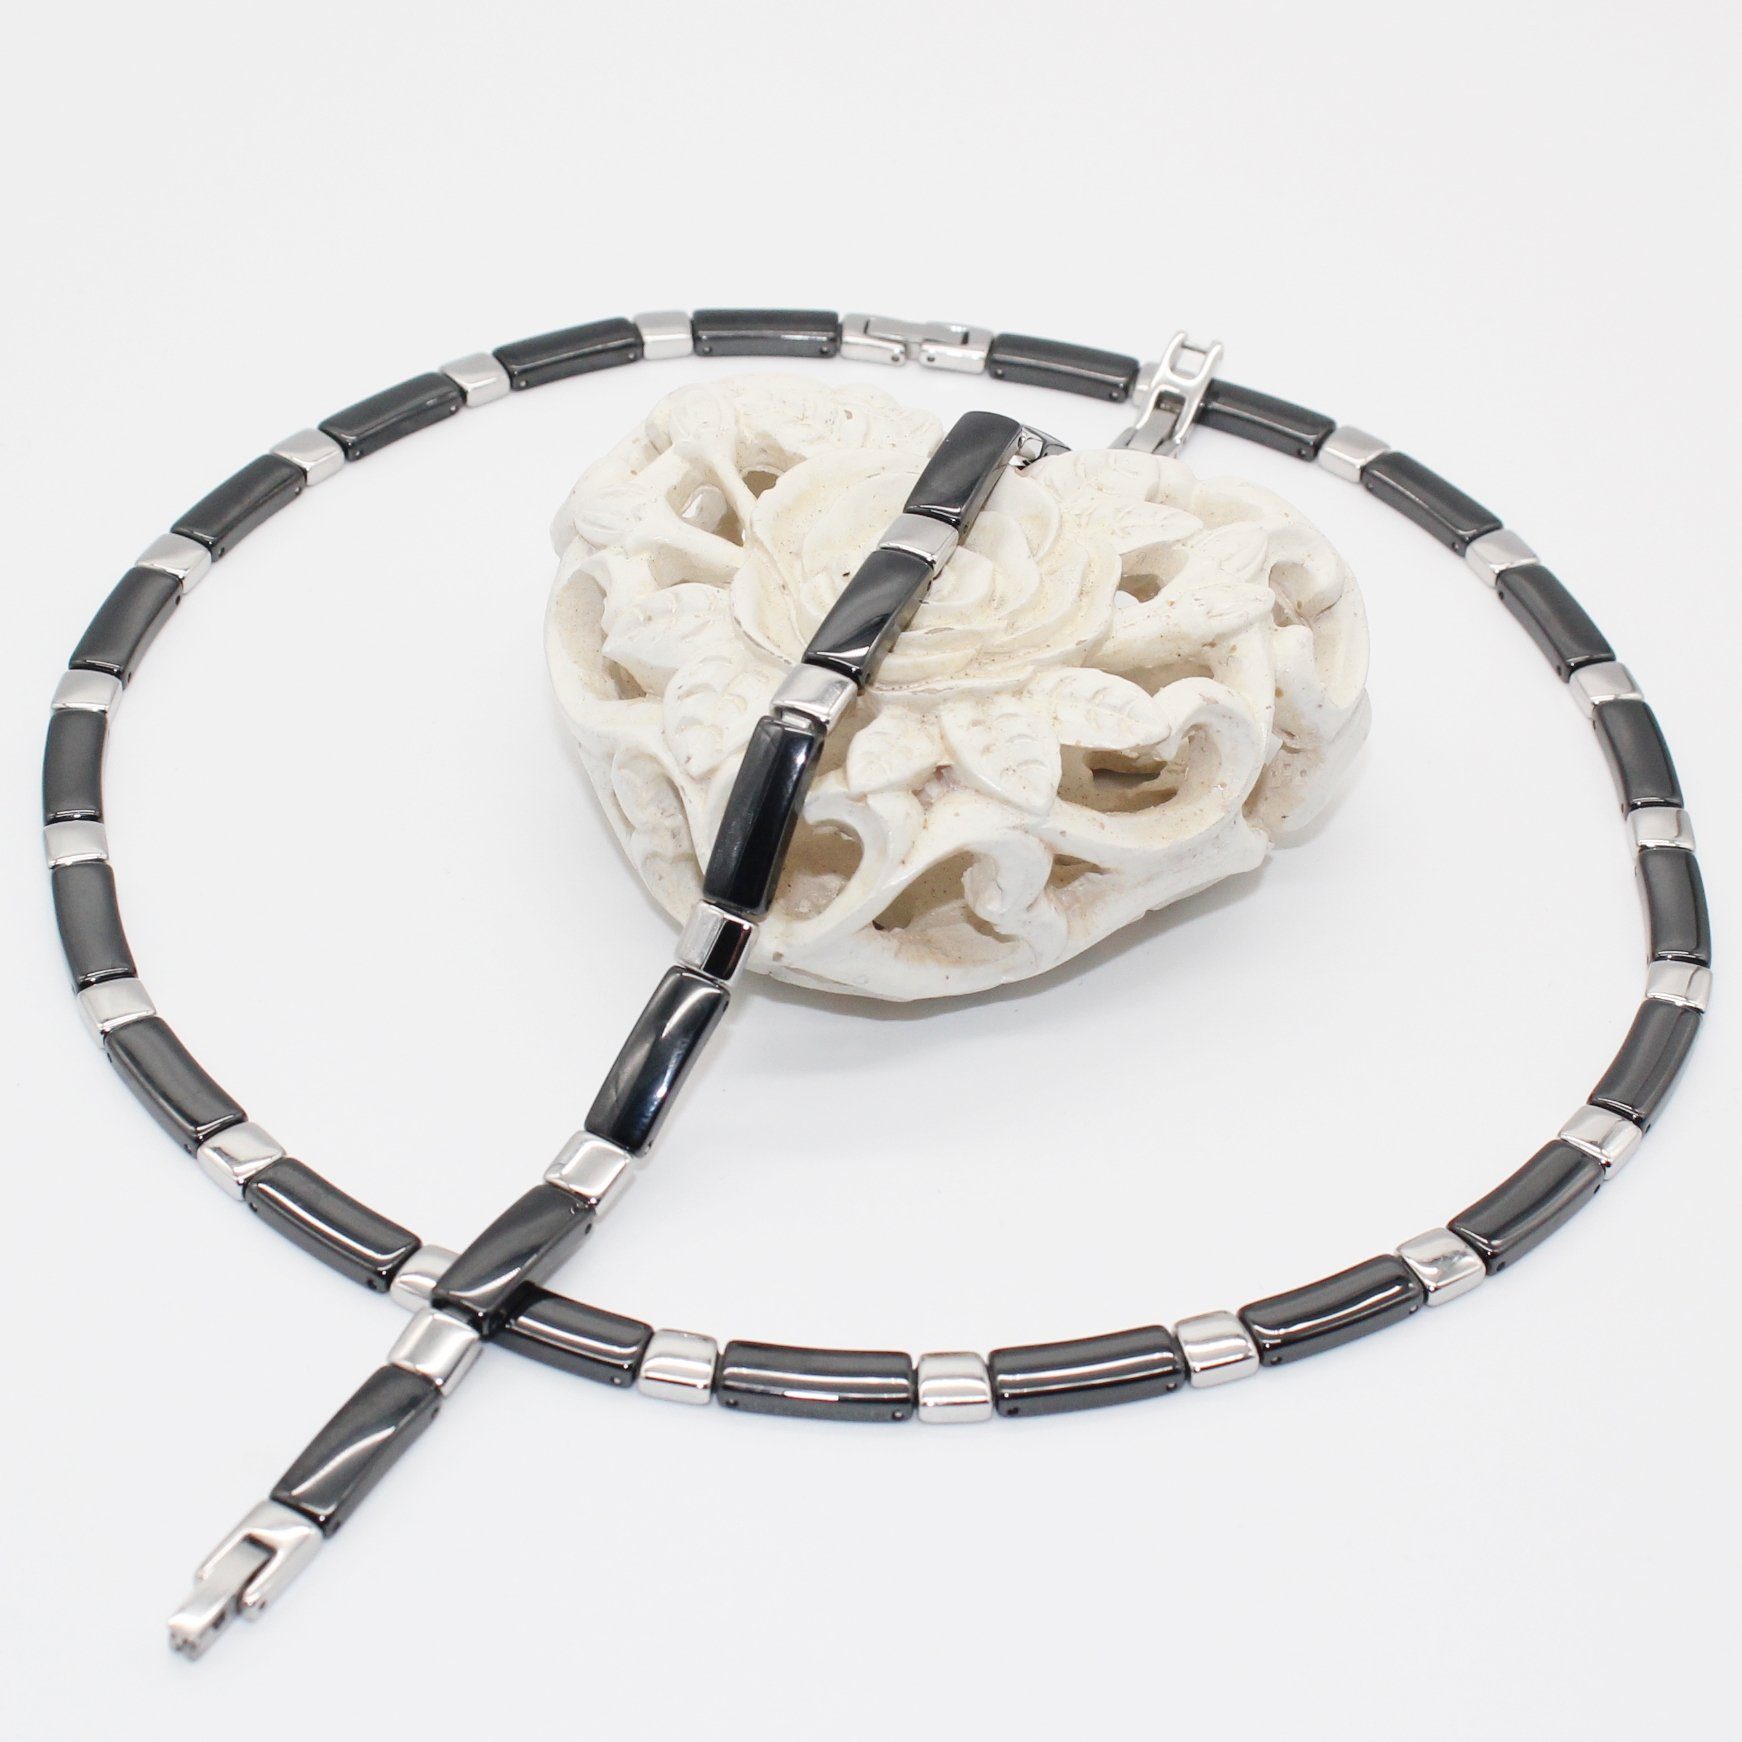 ELLAWIL Collier-Set Collier und Armband aus Keramik und Edelstahl Schwarz Silber (Kettenlänge 50 cm, Armbandlänge 19 cm, Breite 6 mm), inklusive Geschenkschachtel